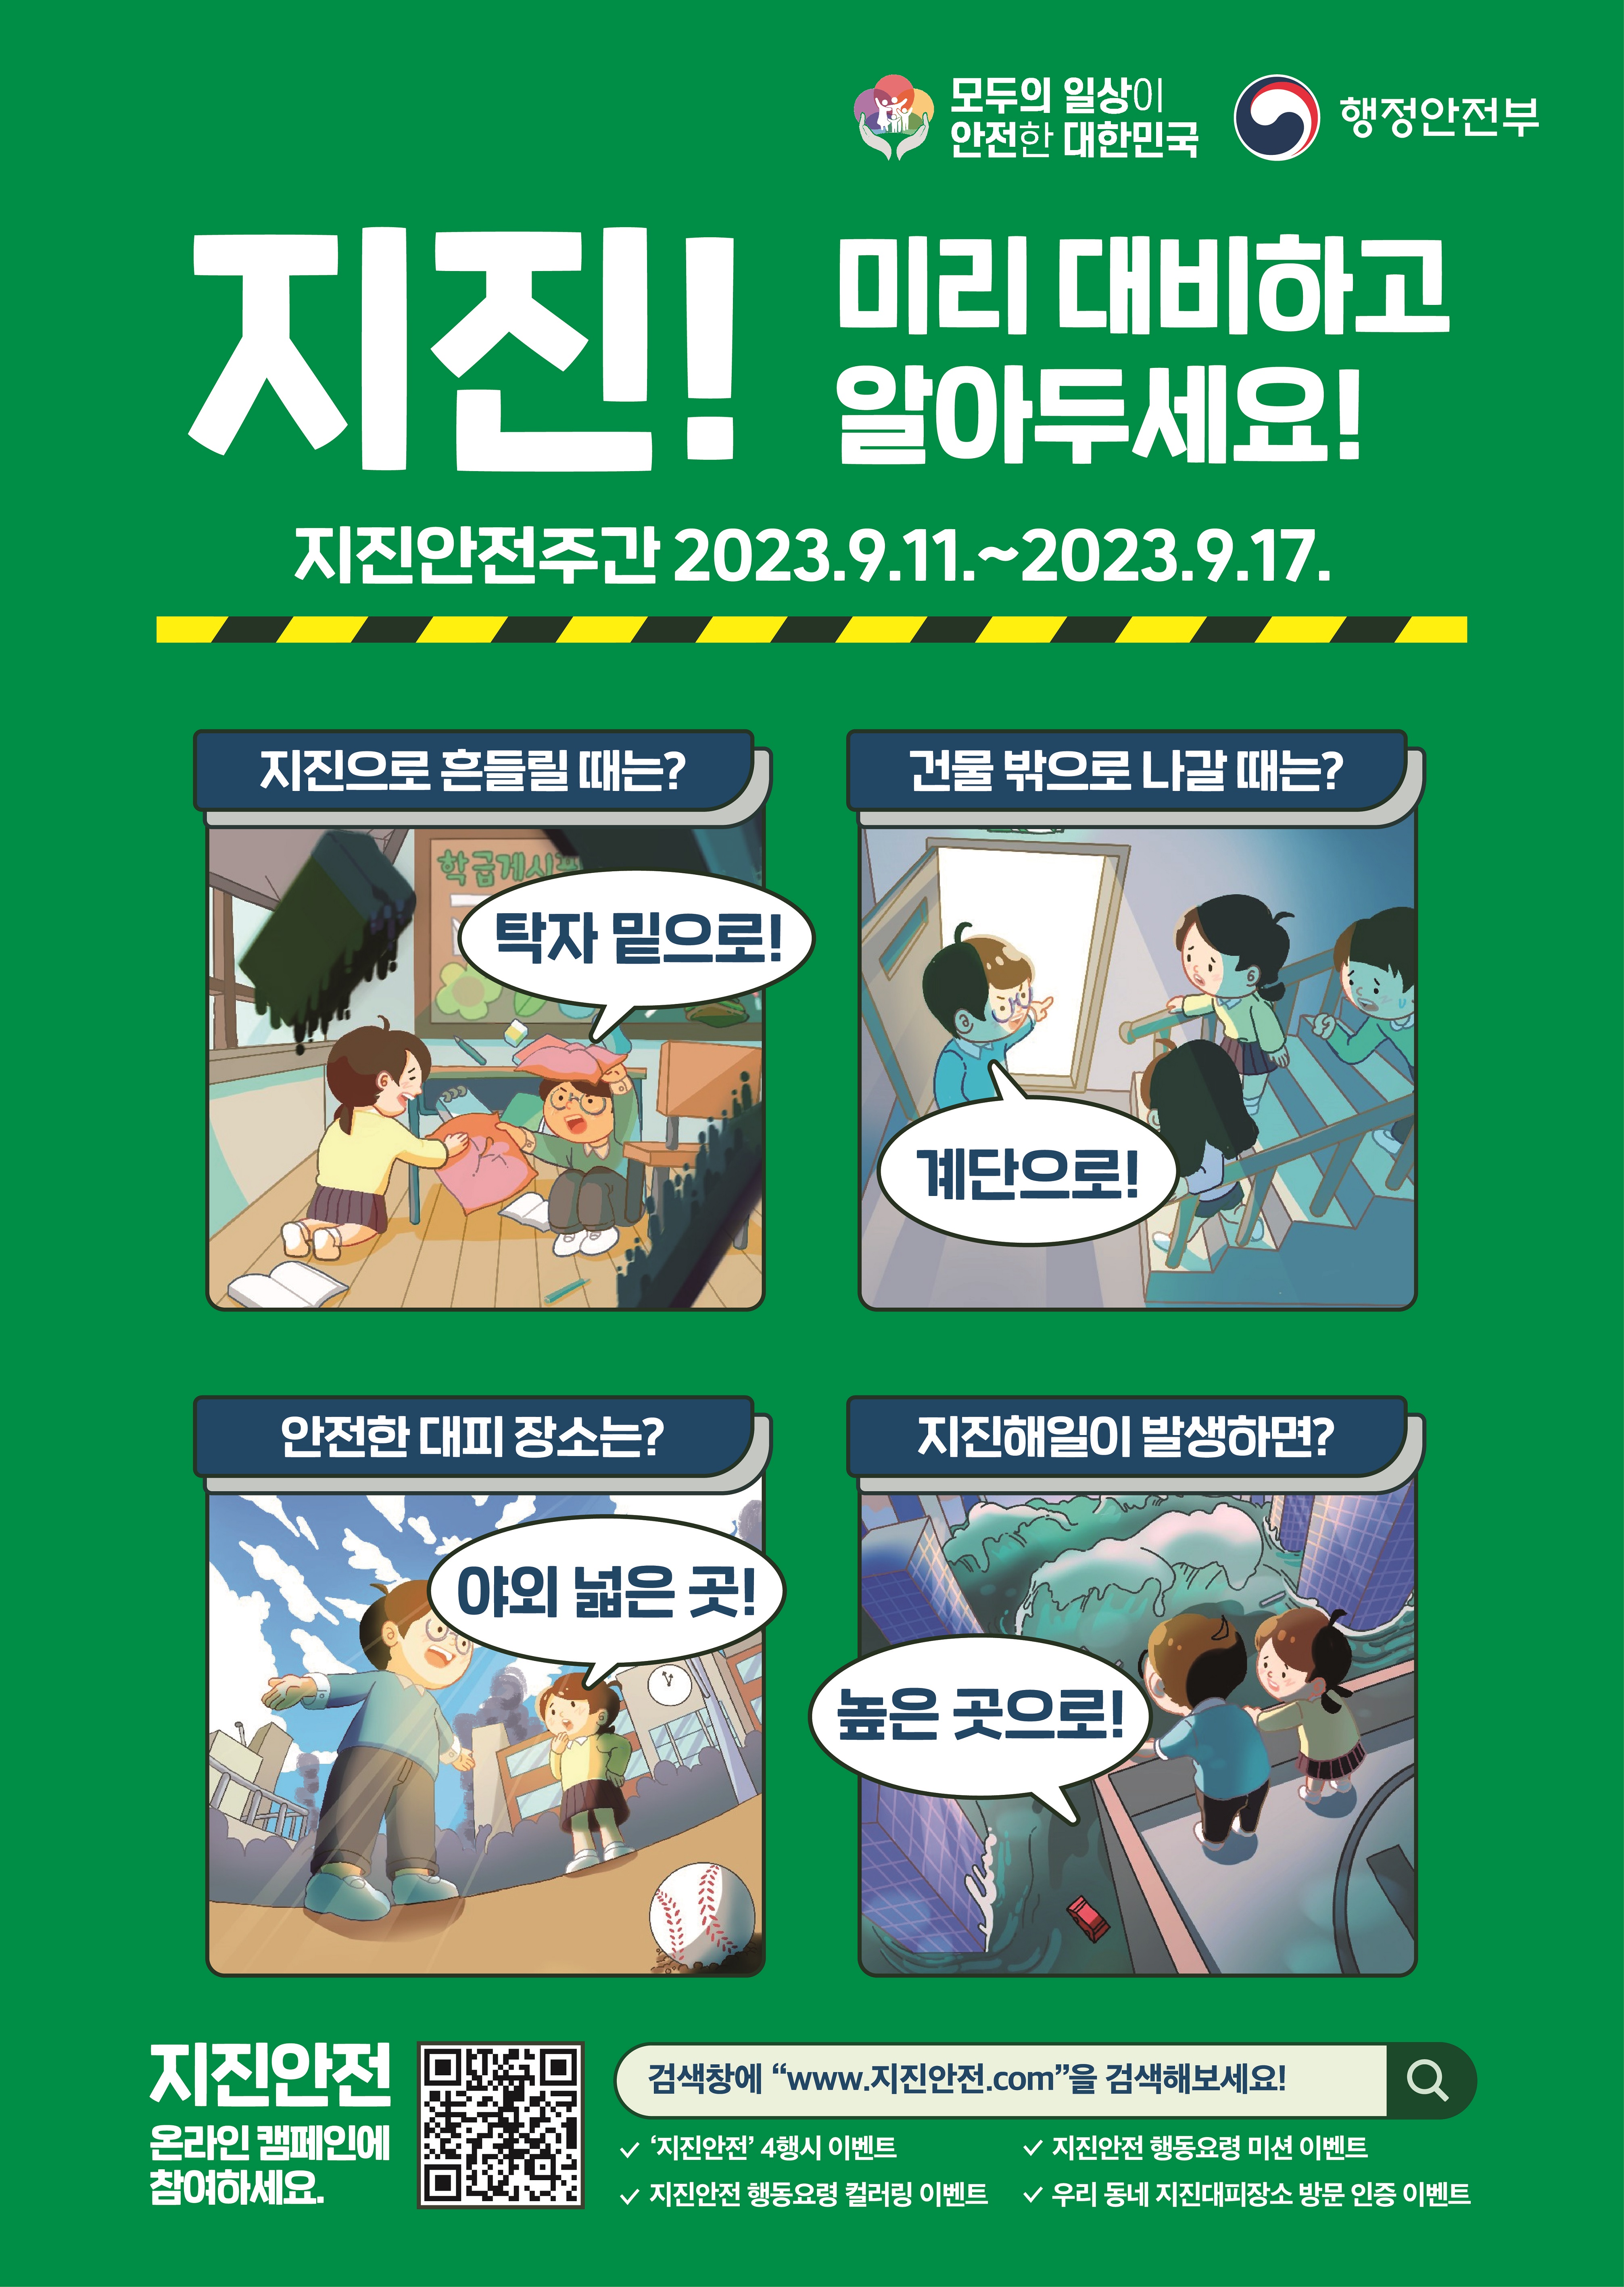 지진 국민행동요령 안내-지진안전주간 포스터